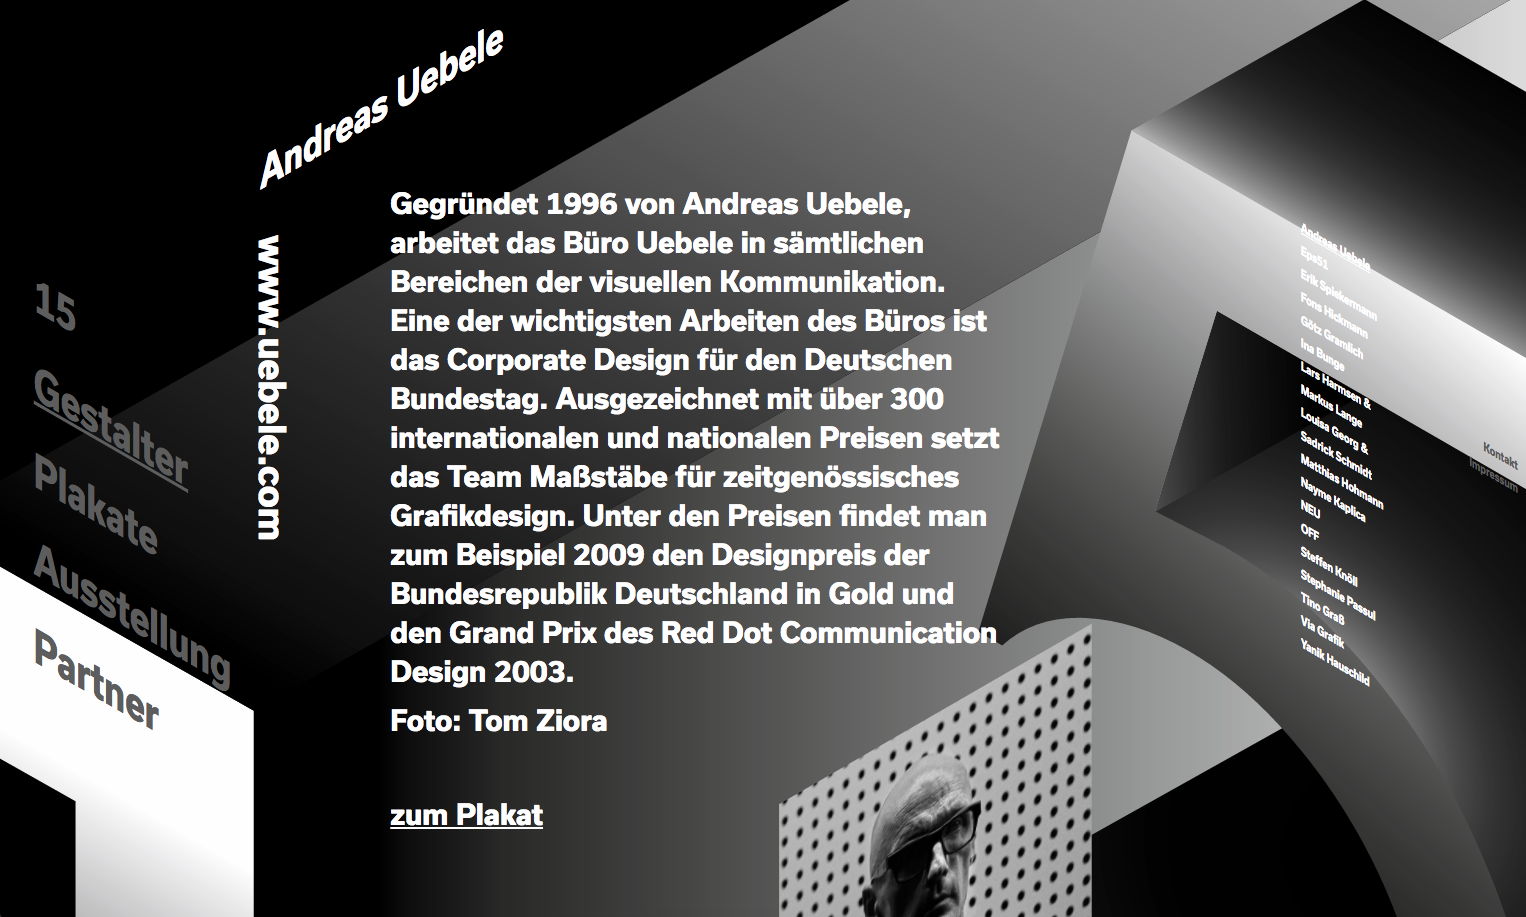 Website der Plakatausstellung - Gestalter - Andreas Uebele